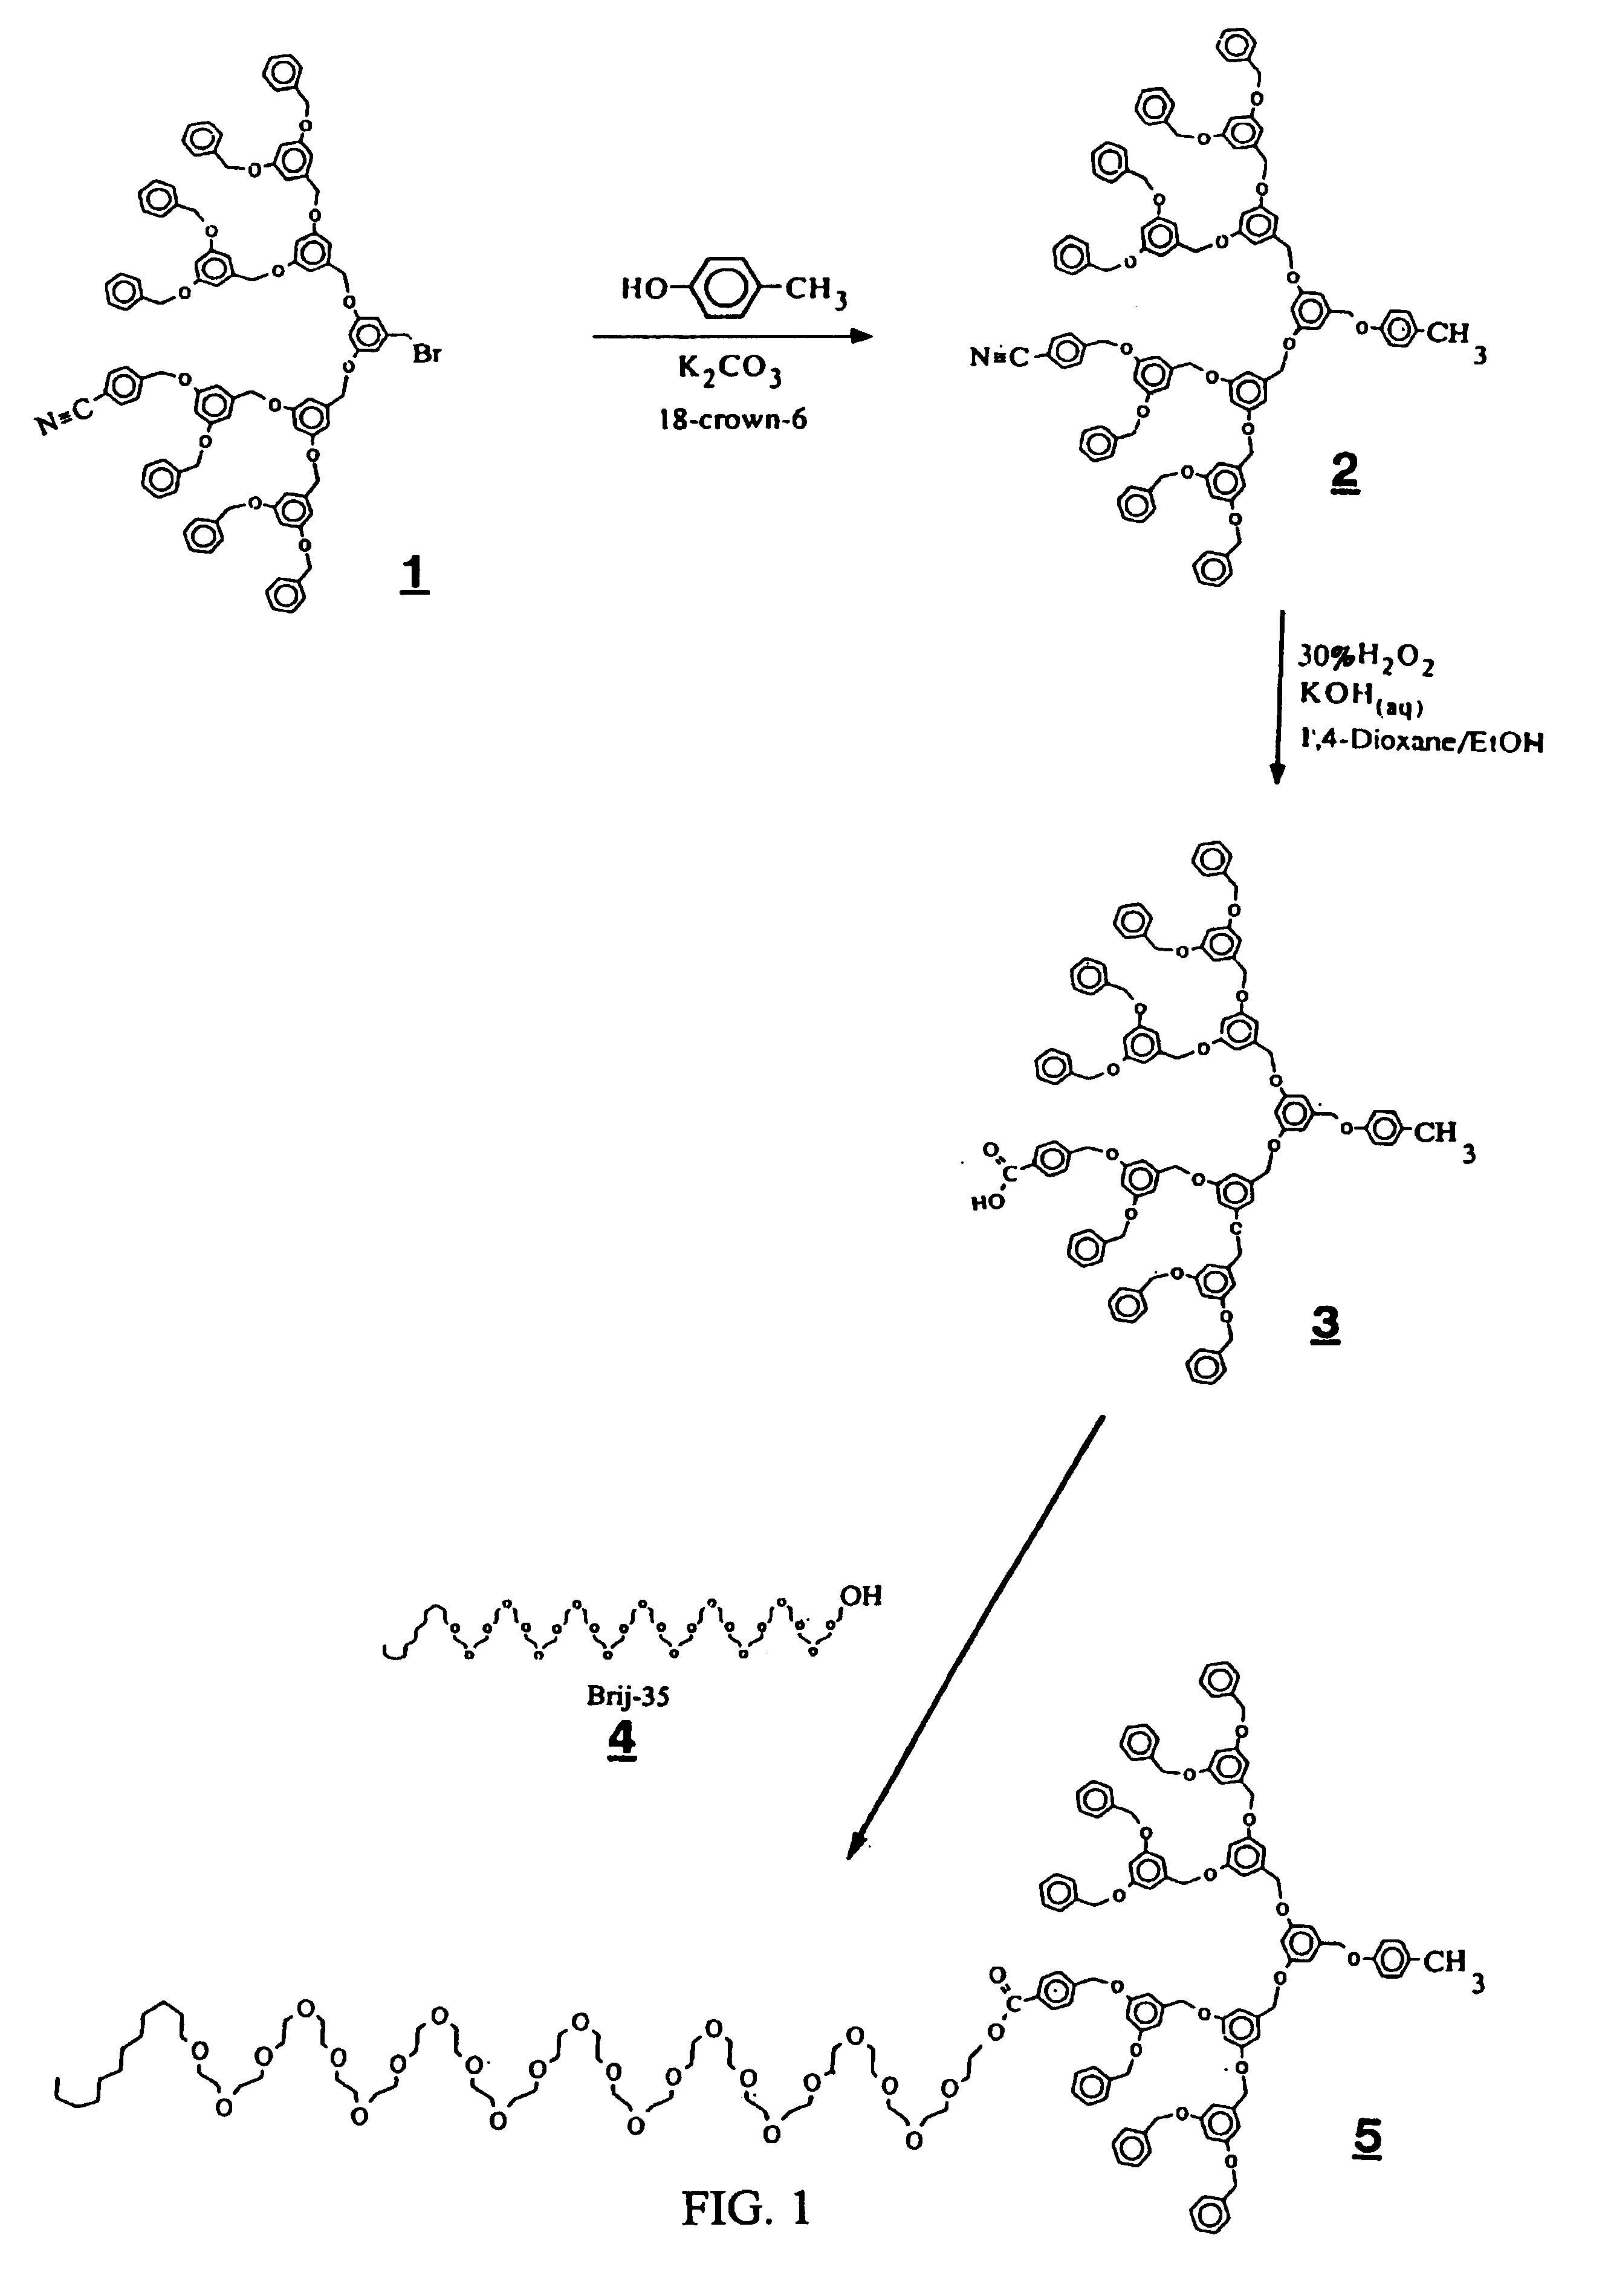 Dendritic based macromolecules